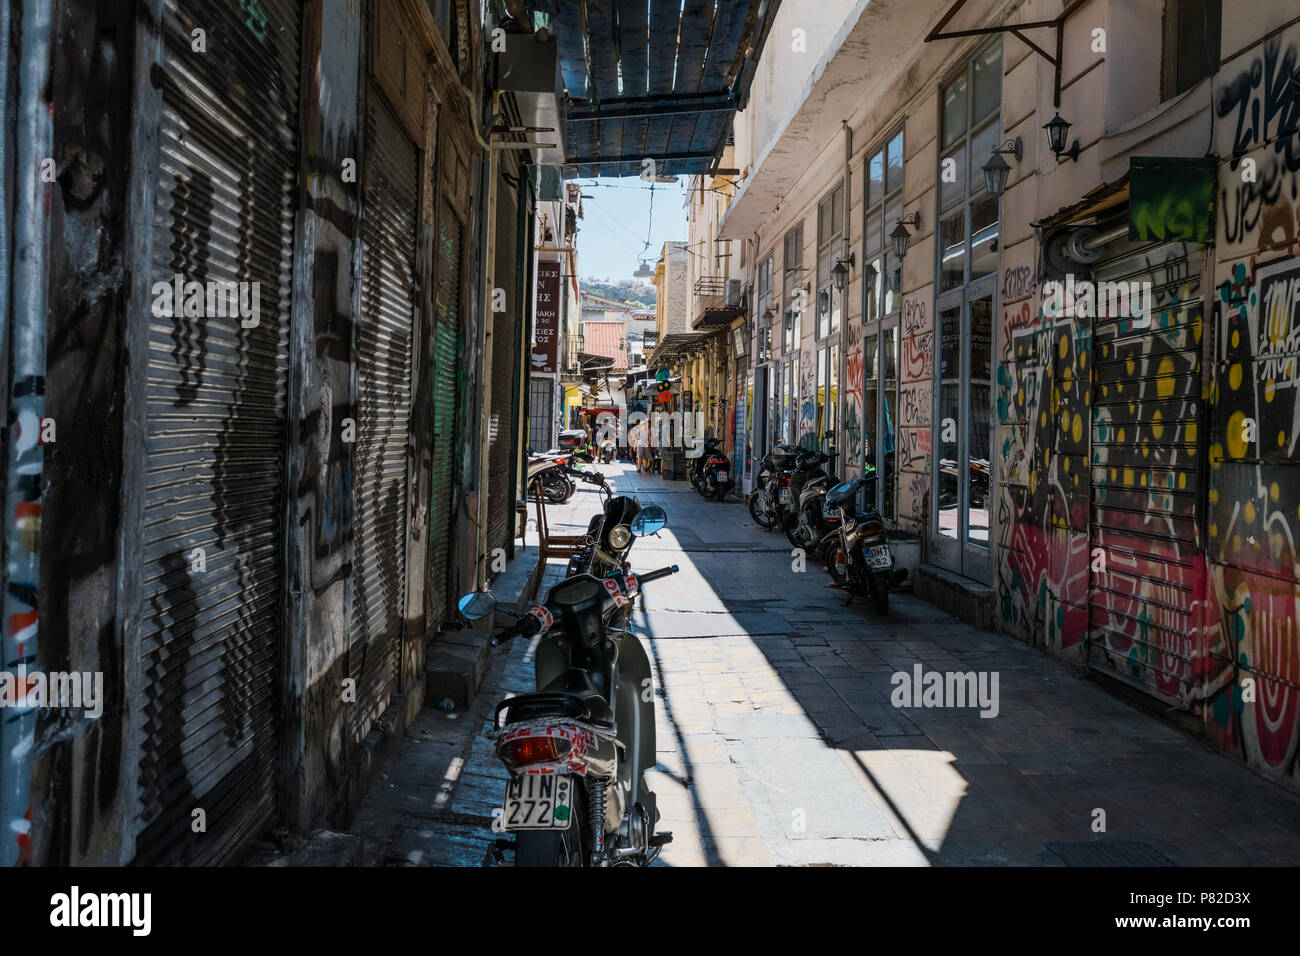 Motocicli nel tenebroso piastrellate street di Atene, Grecia. Con graffiti sui muri e serrande avvolgibili. Foto Stock